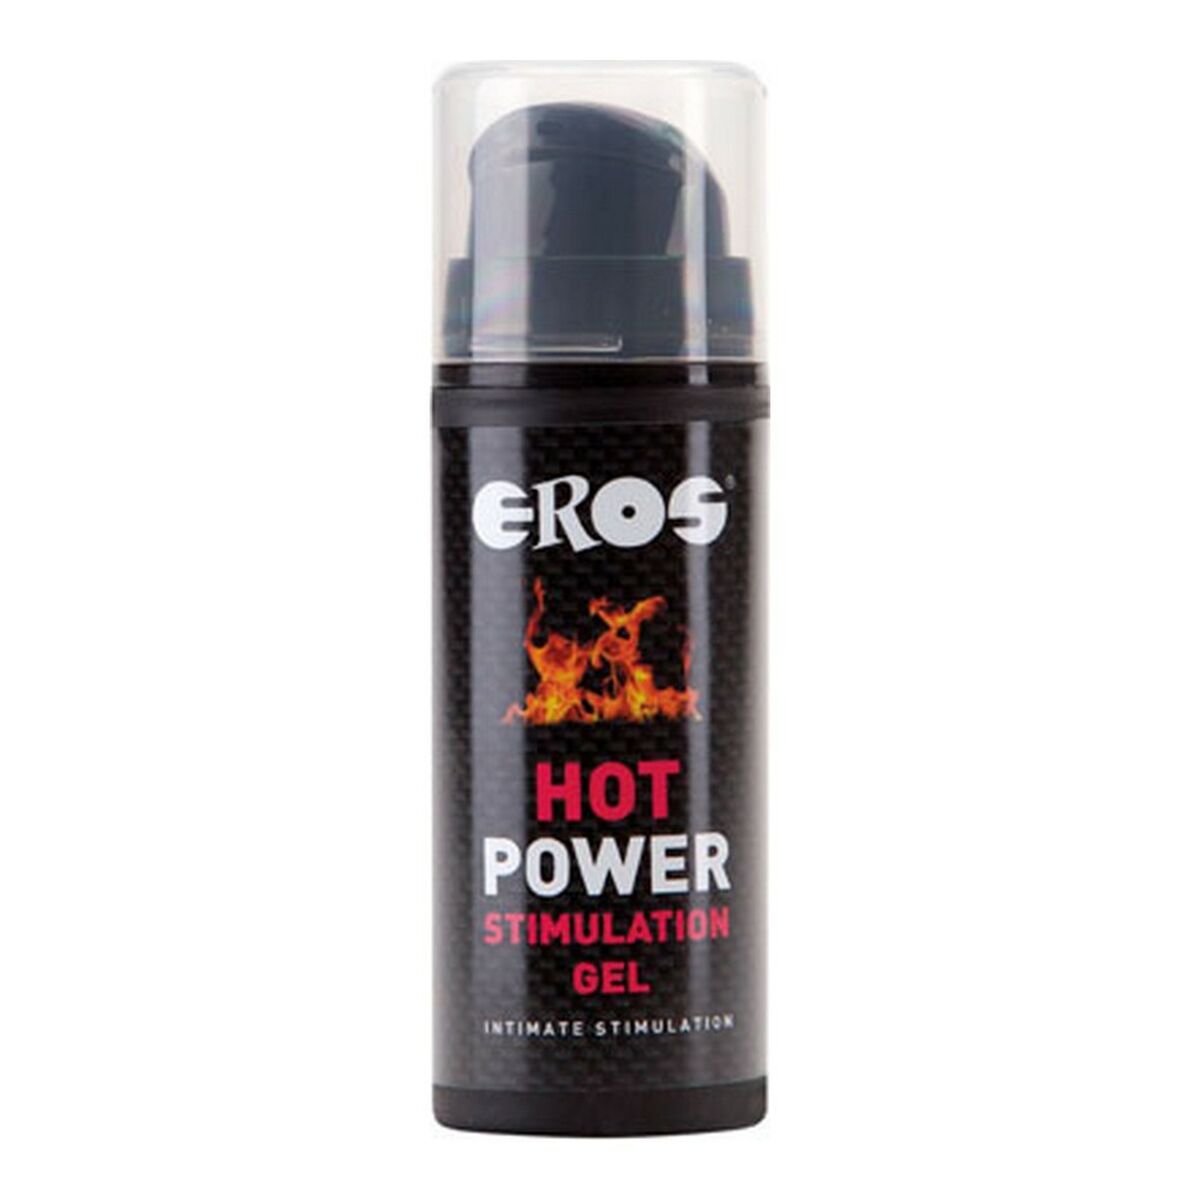 Osta tuote Stimuloiva geeli Hot Power Eros 30 ml verkkokaupastamme Korhone: Seksikauppa & Erotiikka 20% alennuksella koodilla VIIKONLOPPU